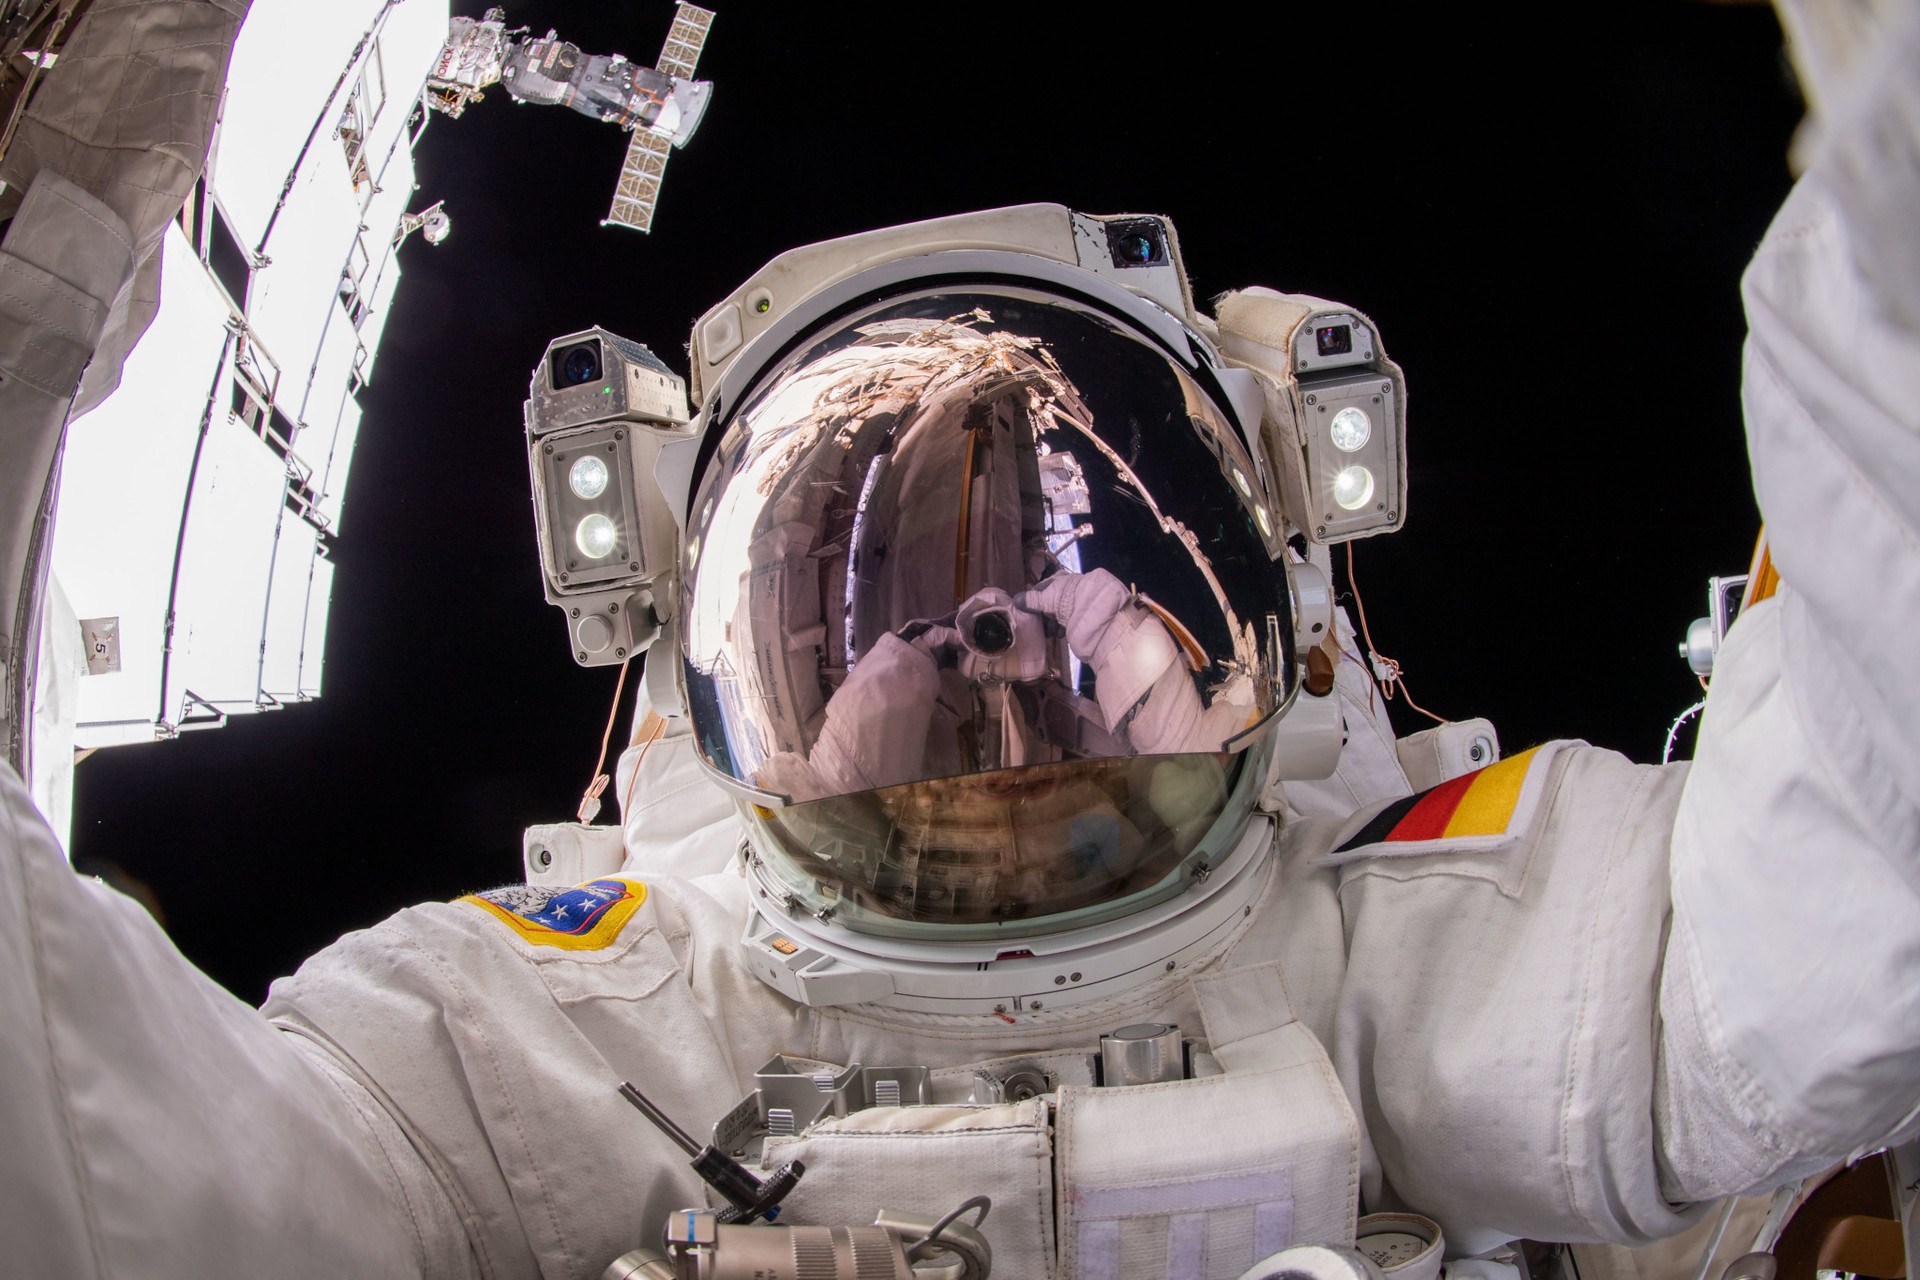 "Weltraum-Selfie" von Matthias Maurer